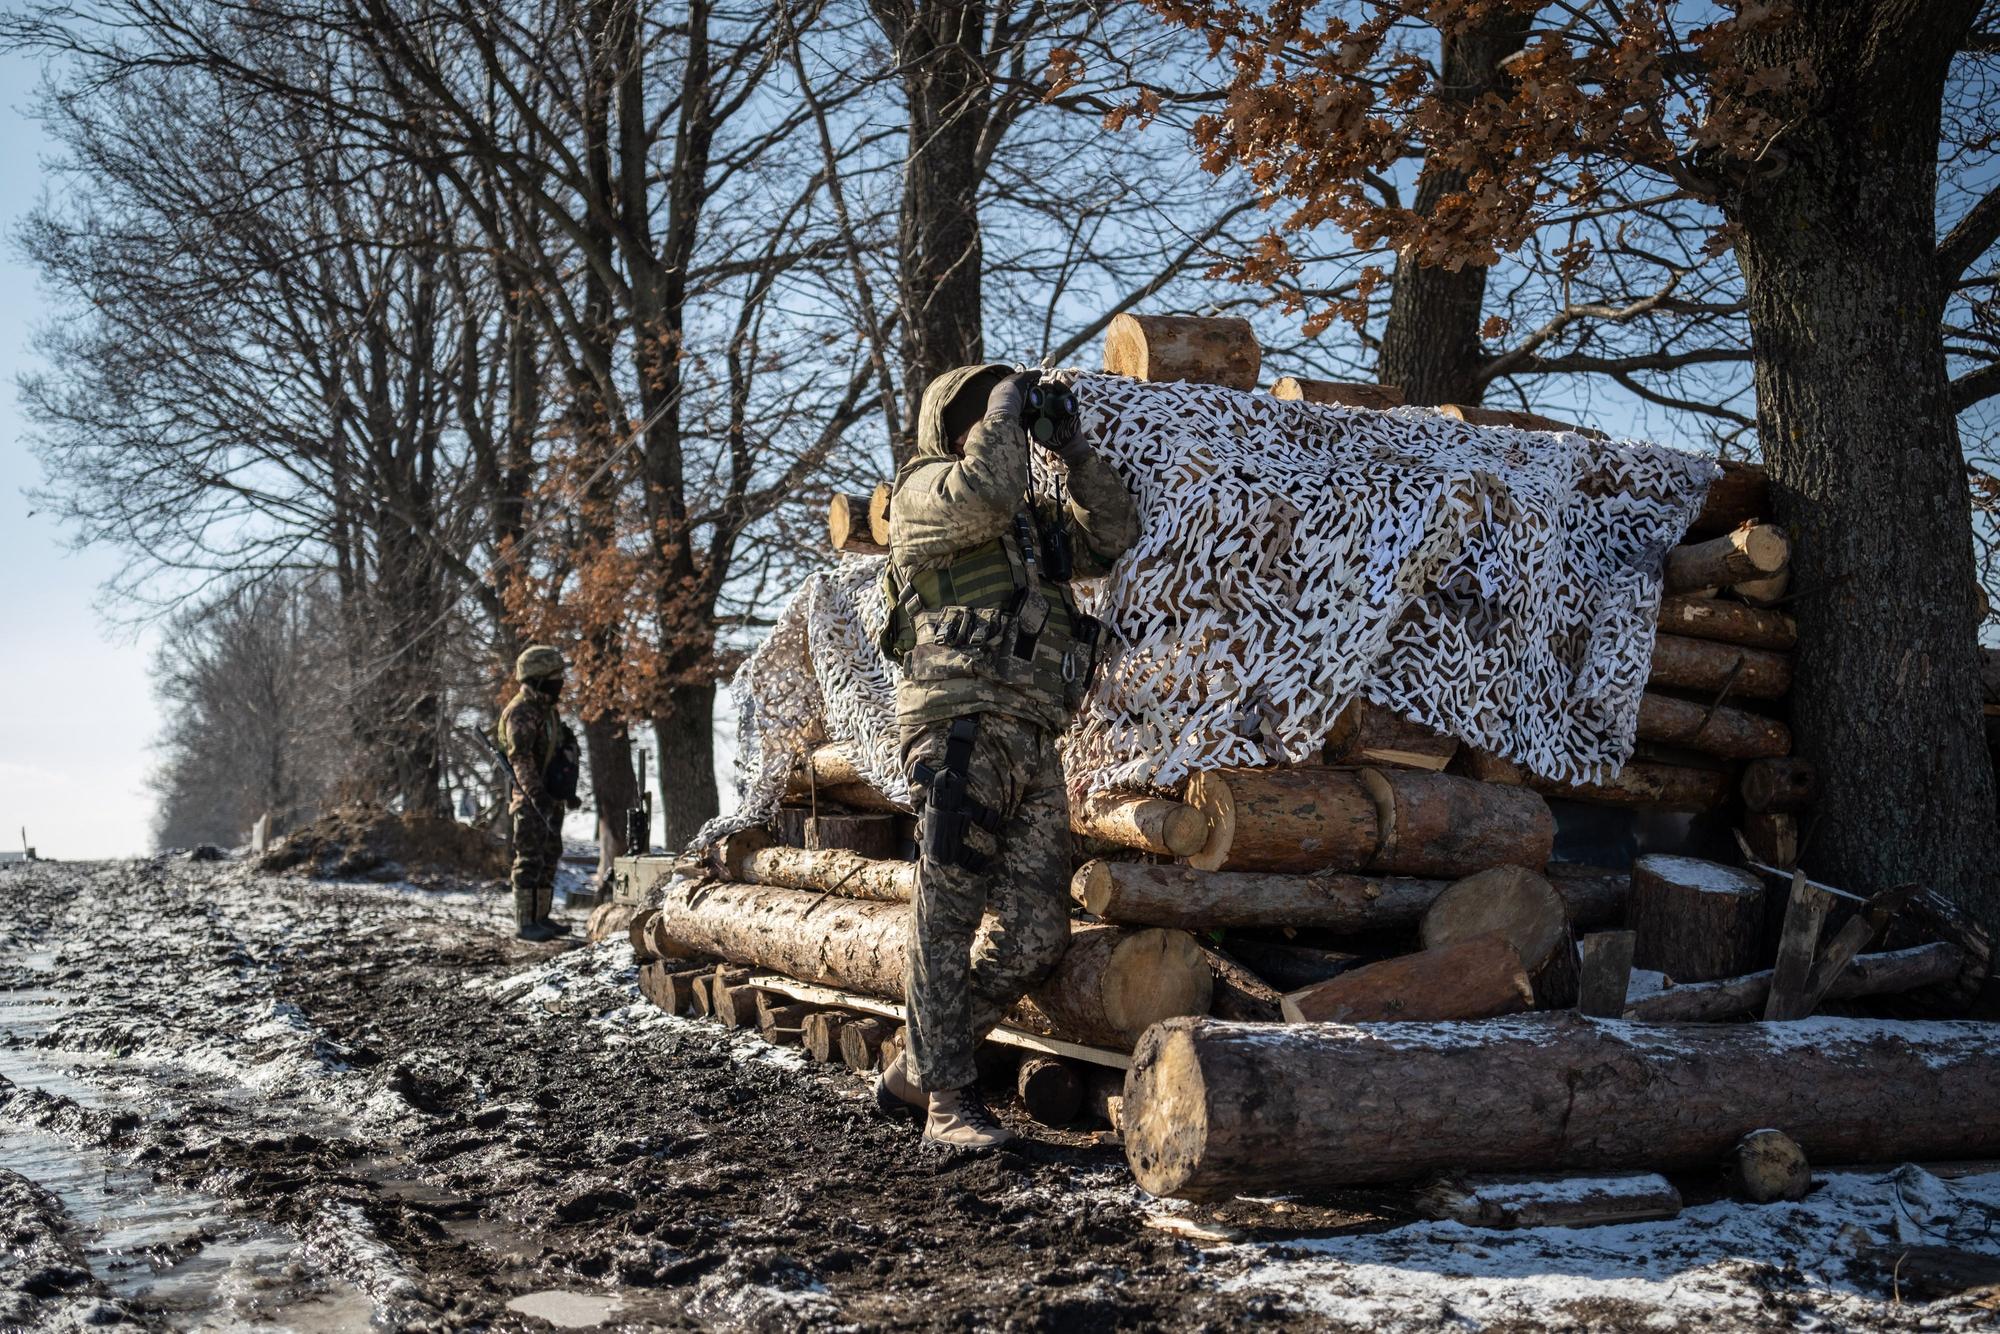 Primer aniversario de la guerra de Ucrania